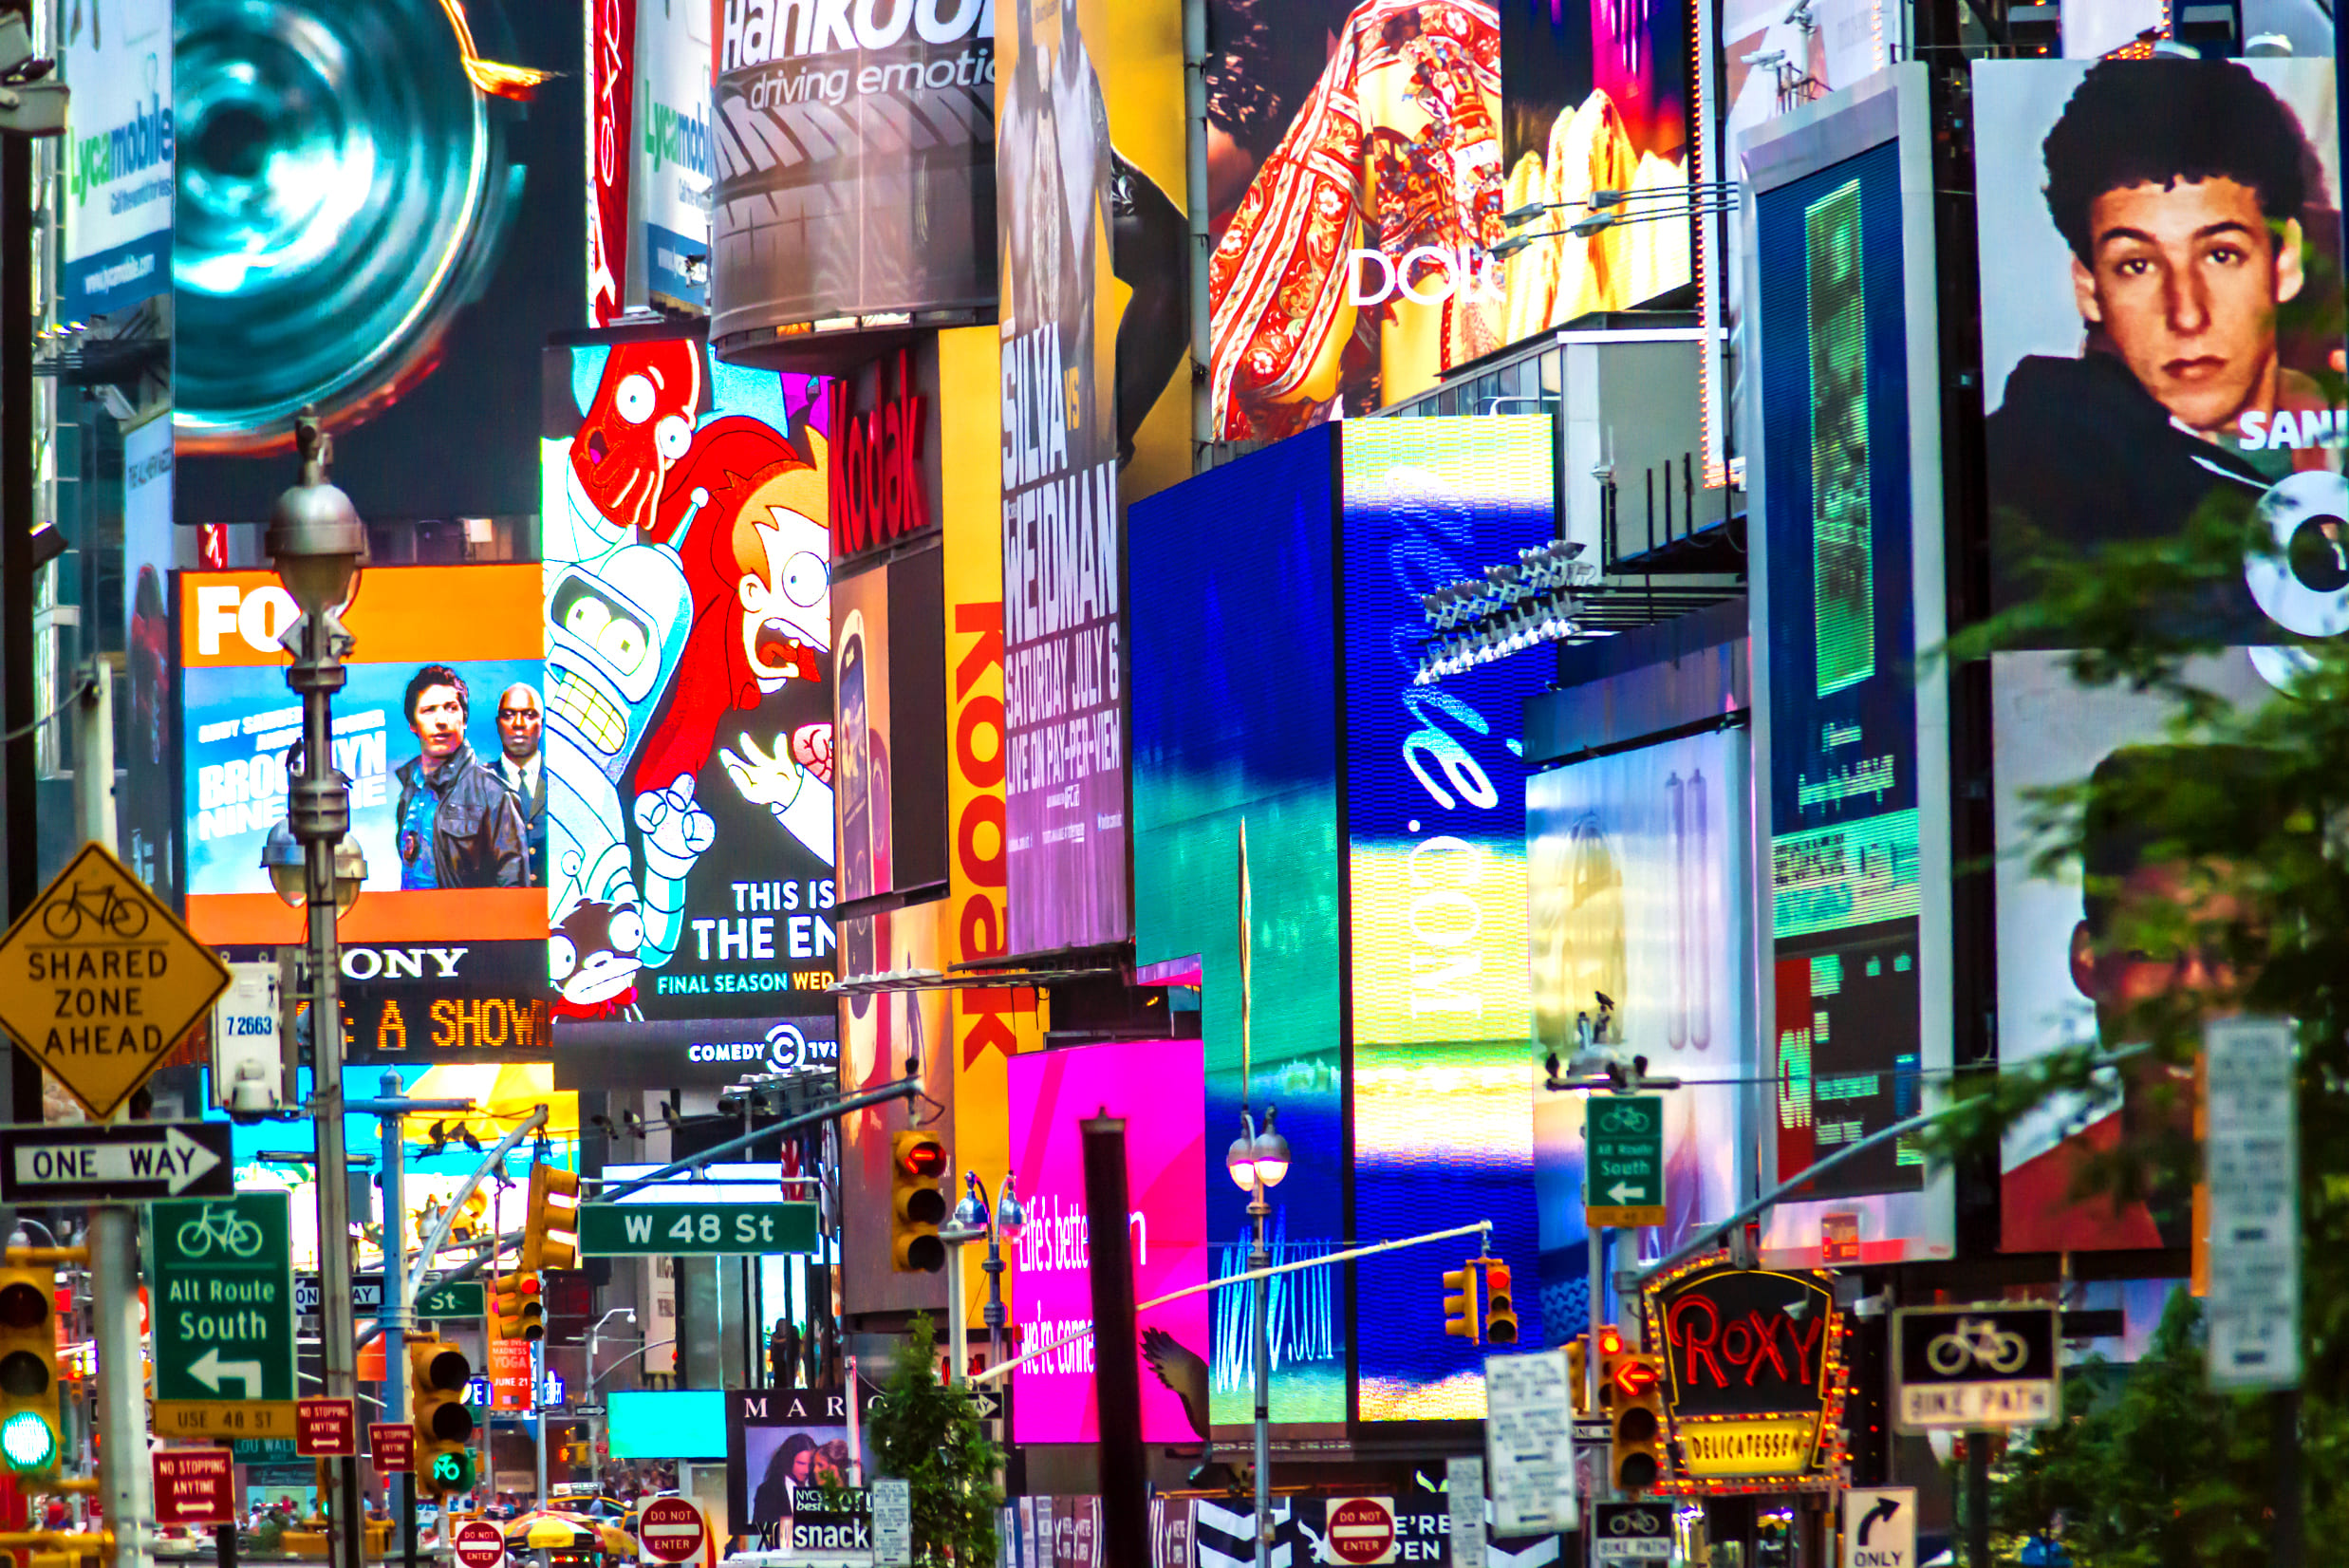 Imagem da Times Square em Nova York para ilustrar a importância da publicidade no dia a dia do consumidor e assim, motivar o empreendedor que deseja abrir uma agência de publicidade